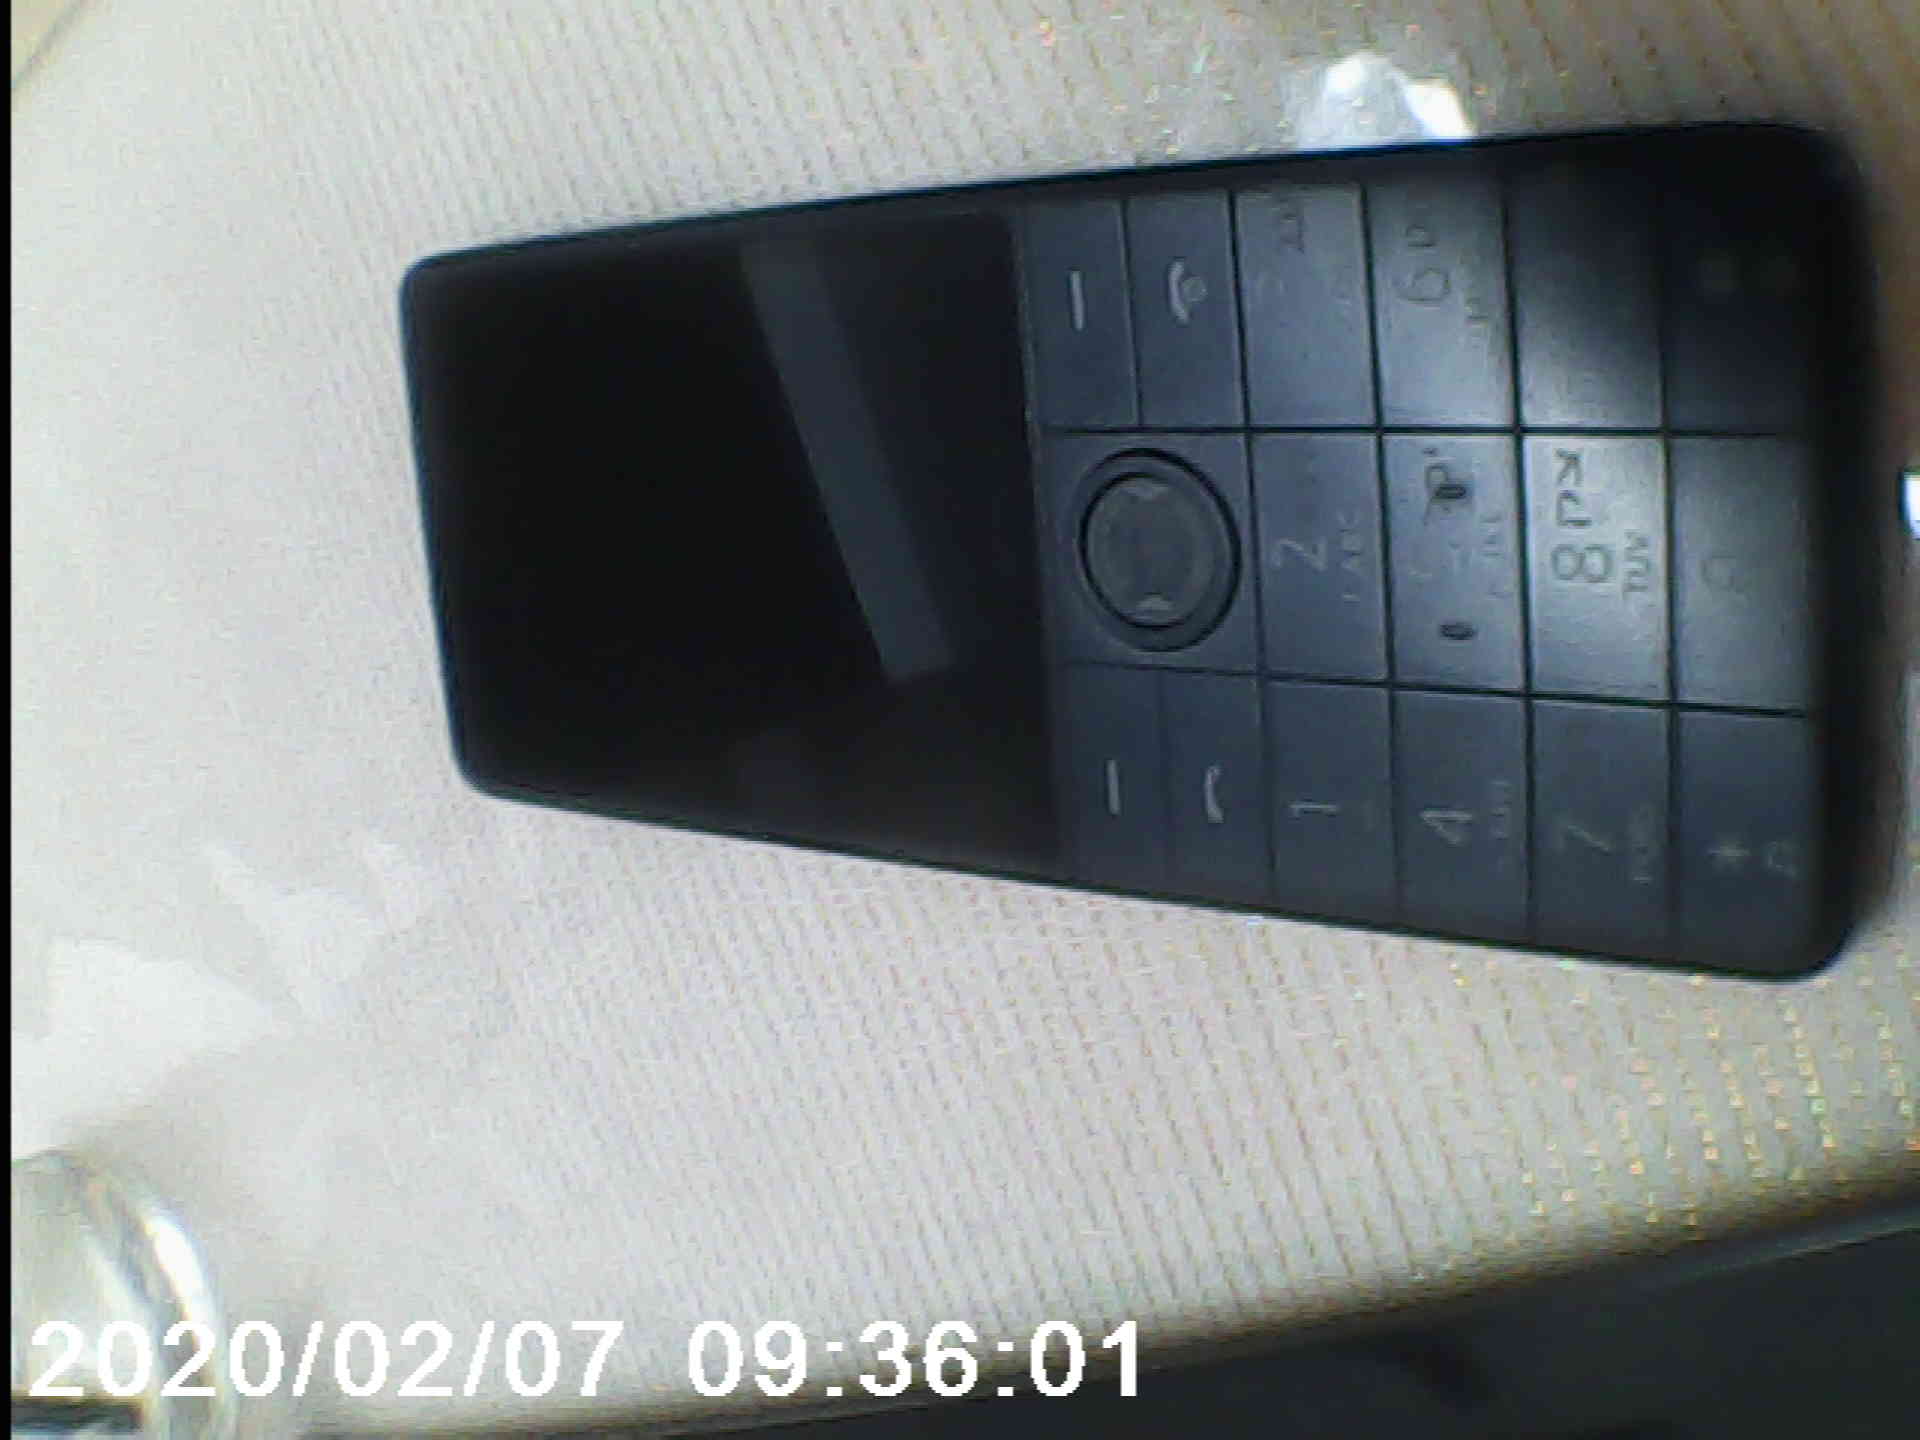 תמונה 3 ,טלפון שיאומי חדש בקופסא למכירה בצפת סלולרי  שונות